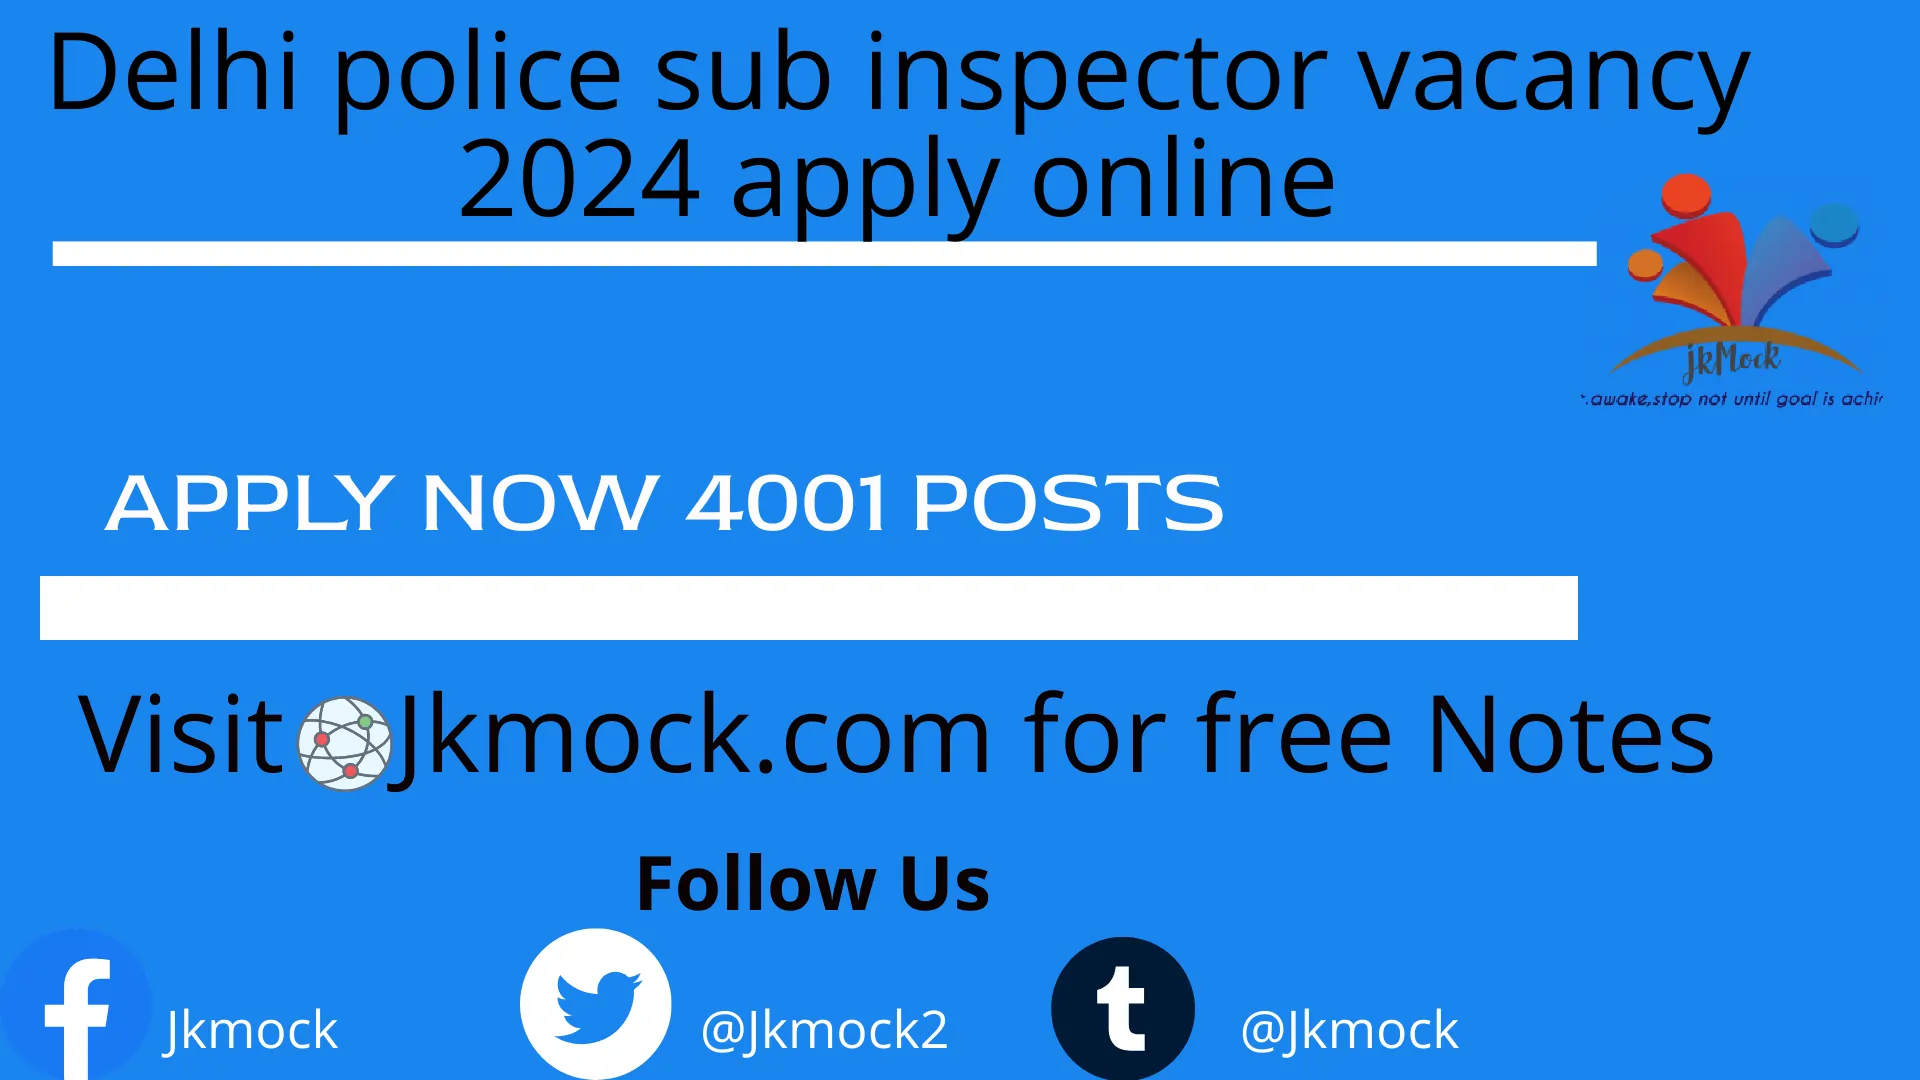 Delhi police sub inspector vacancy 2024 apply Now